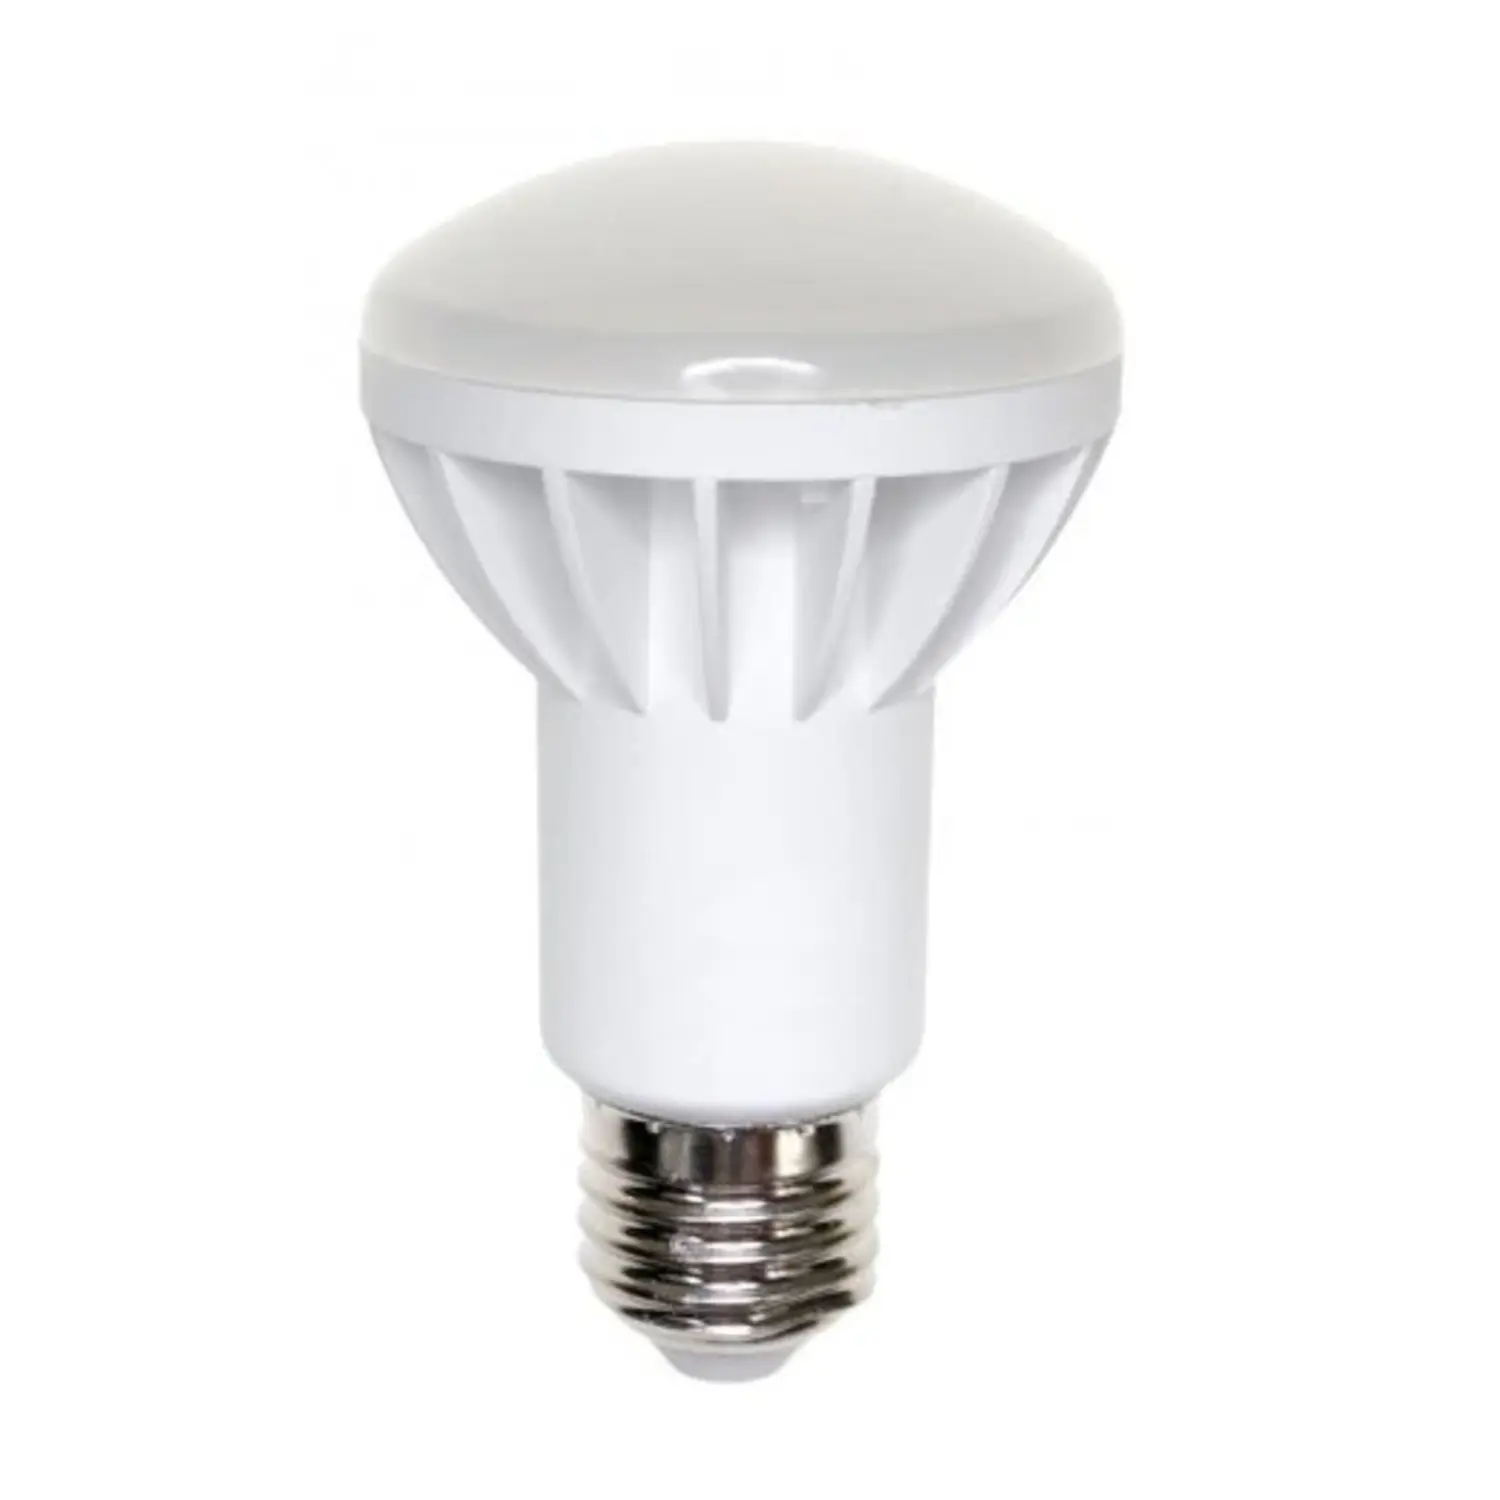 immagine del prodotto lampadina led spot r63 faretto incasso e27 8 watt bianco freddo